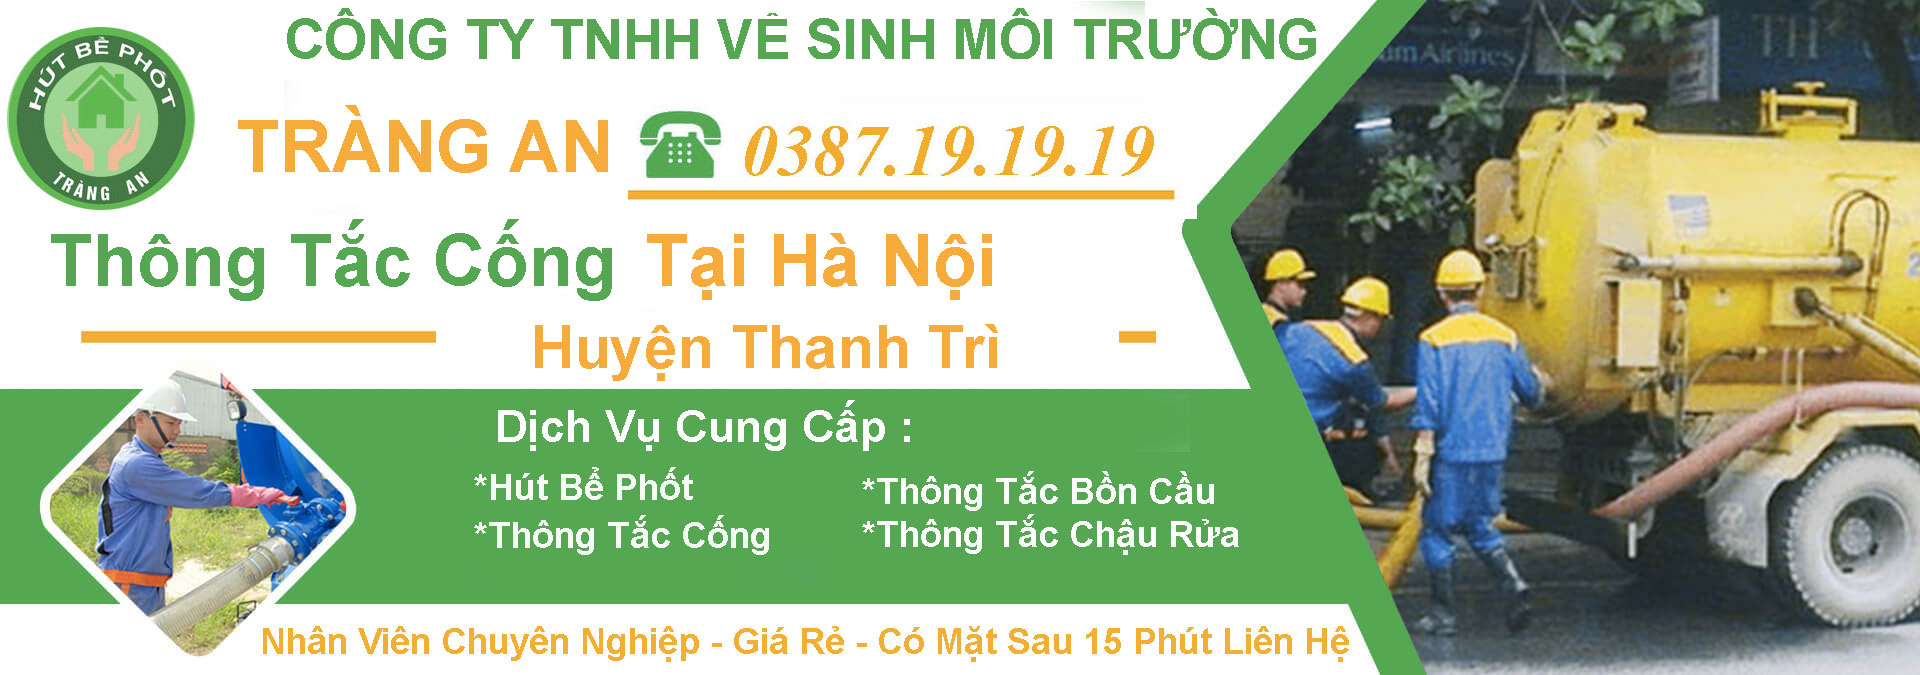 1️⃣ Thông Tắc Cống Tại Thanh Trì【Tràng An】giá 5OK – BH 5 Năm